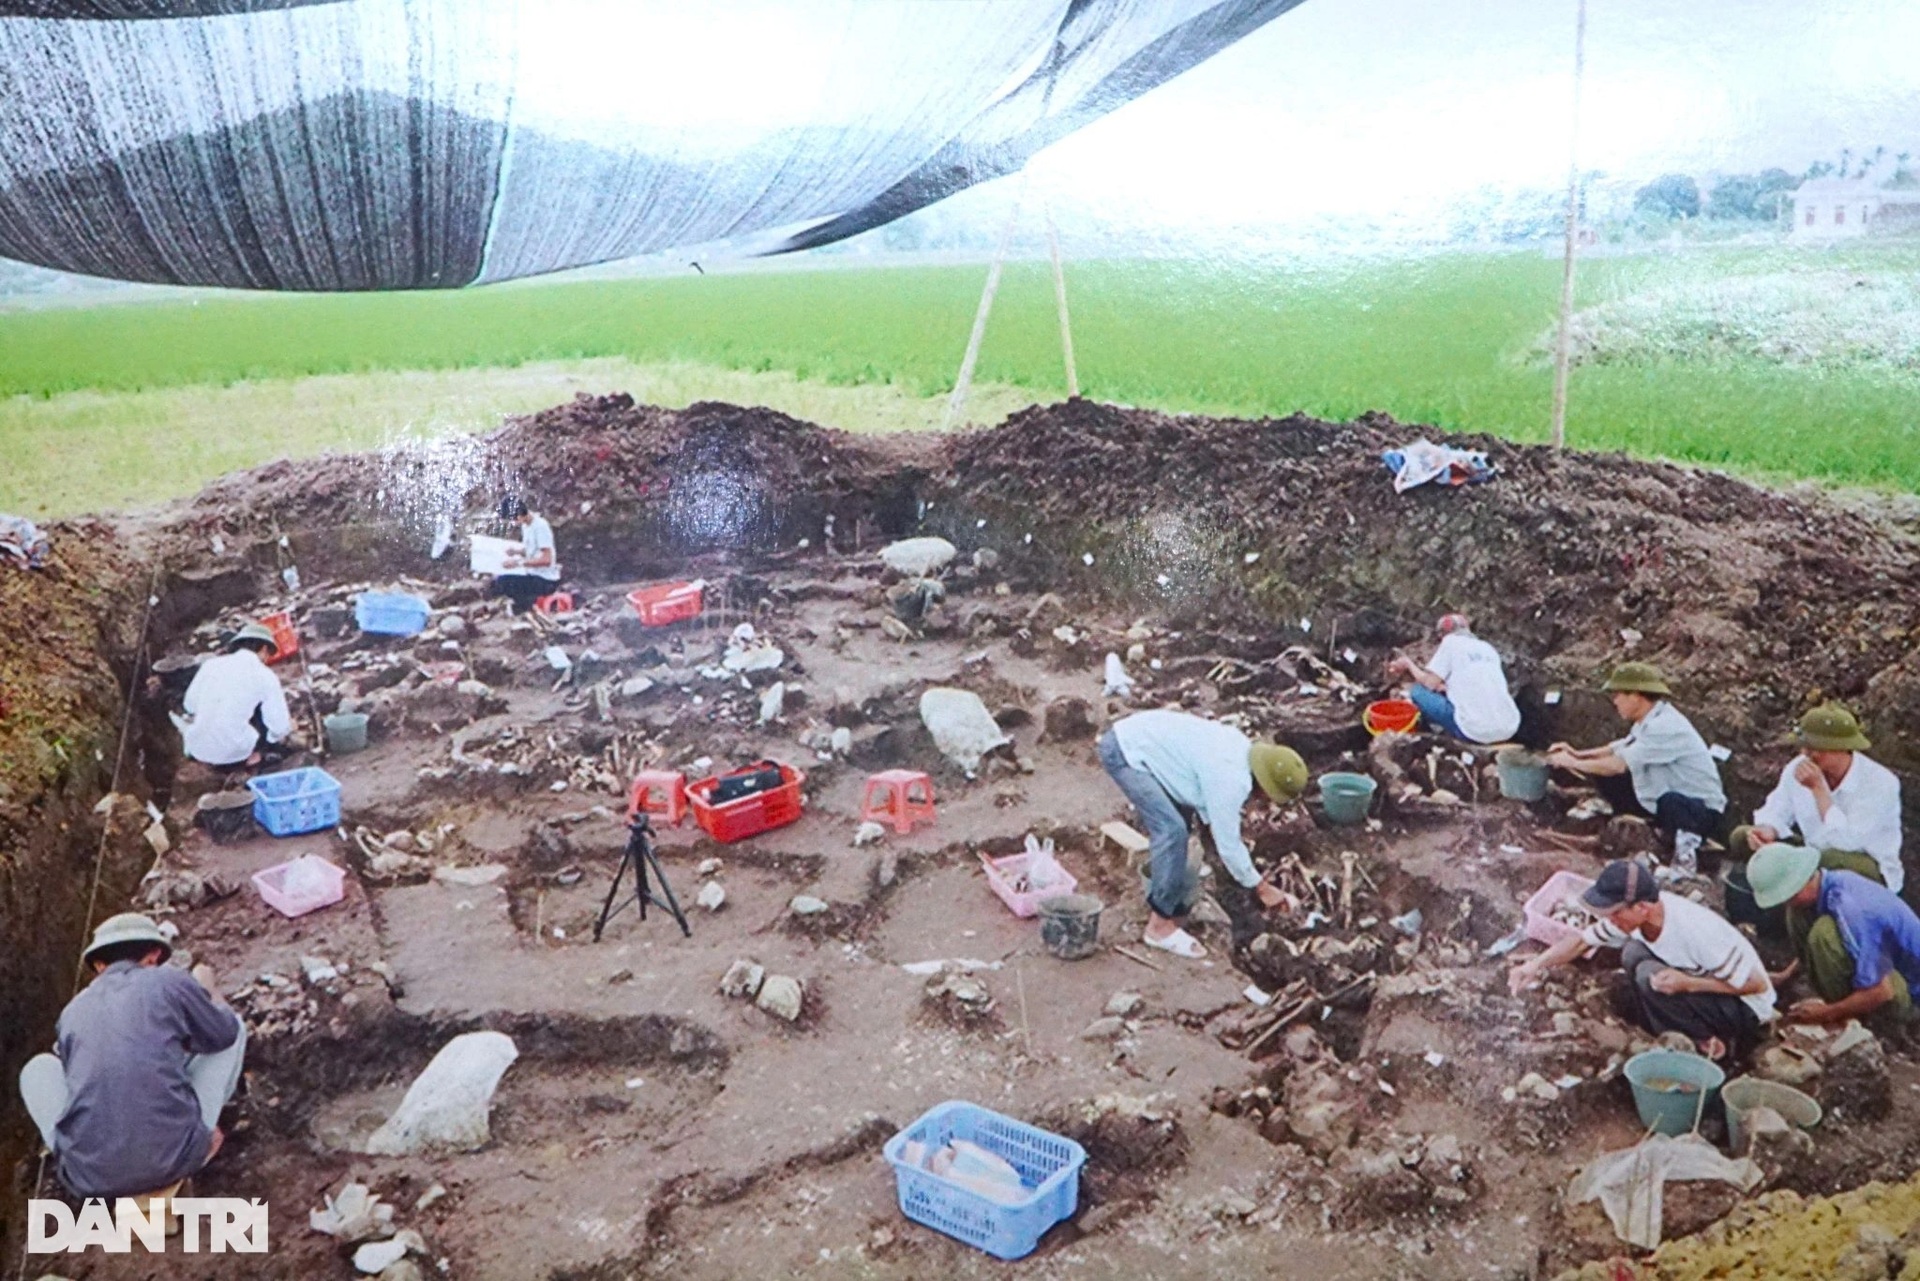 Ngôi làng đặc biệt ở Thanh Hóa, nơi phát hiện cụm mộ cổ 3 người chôn chung - 9